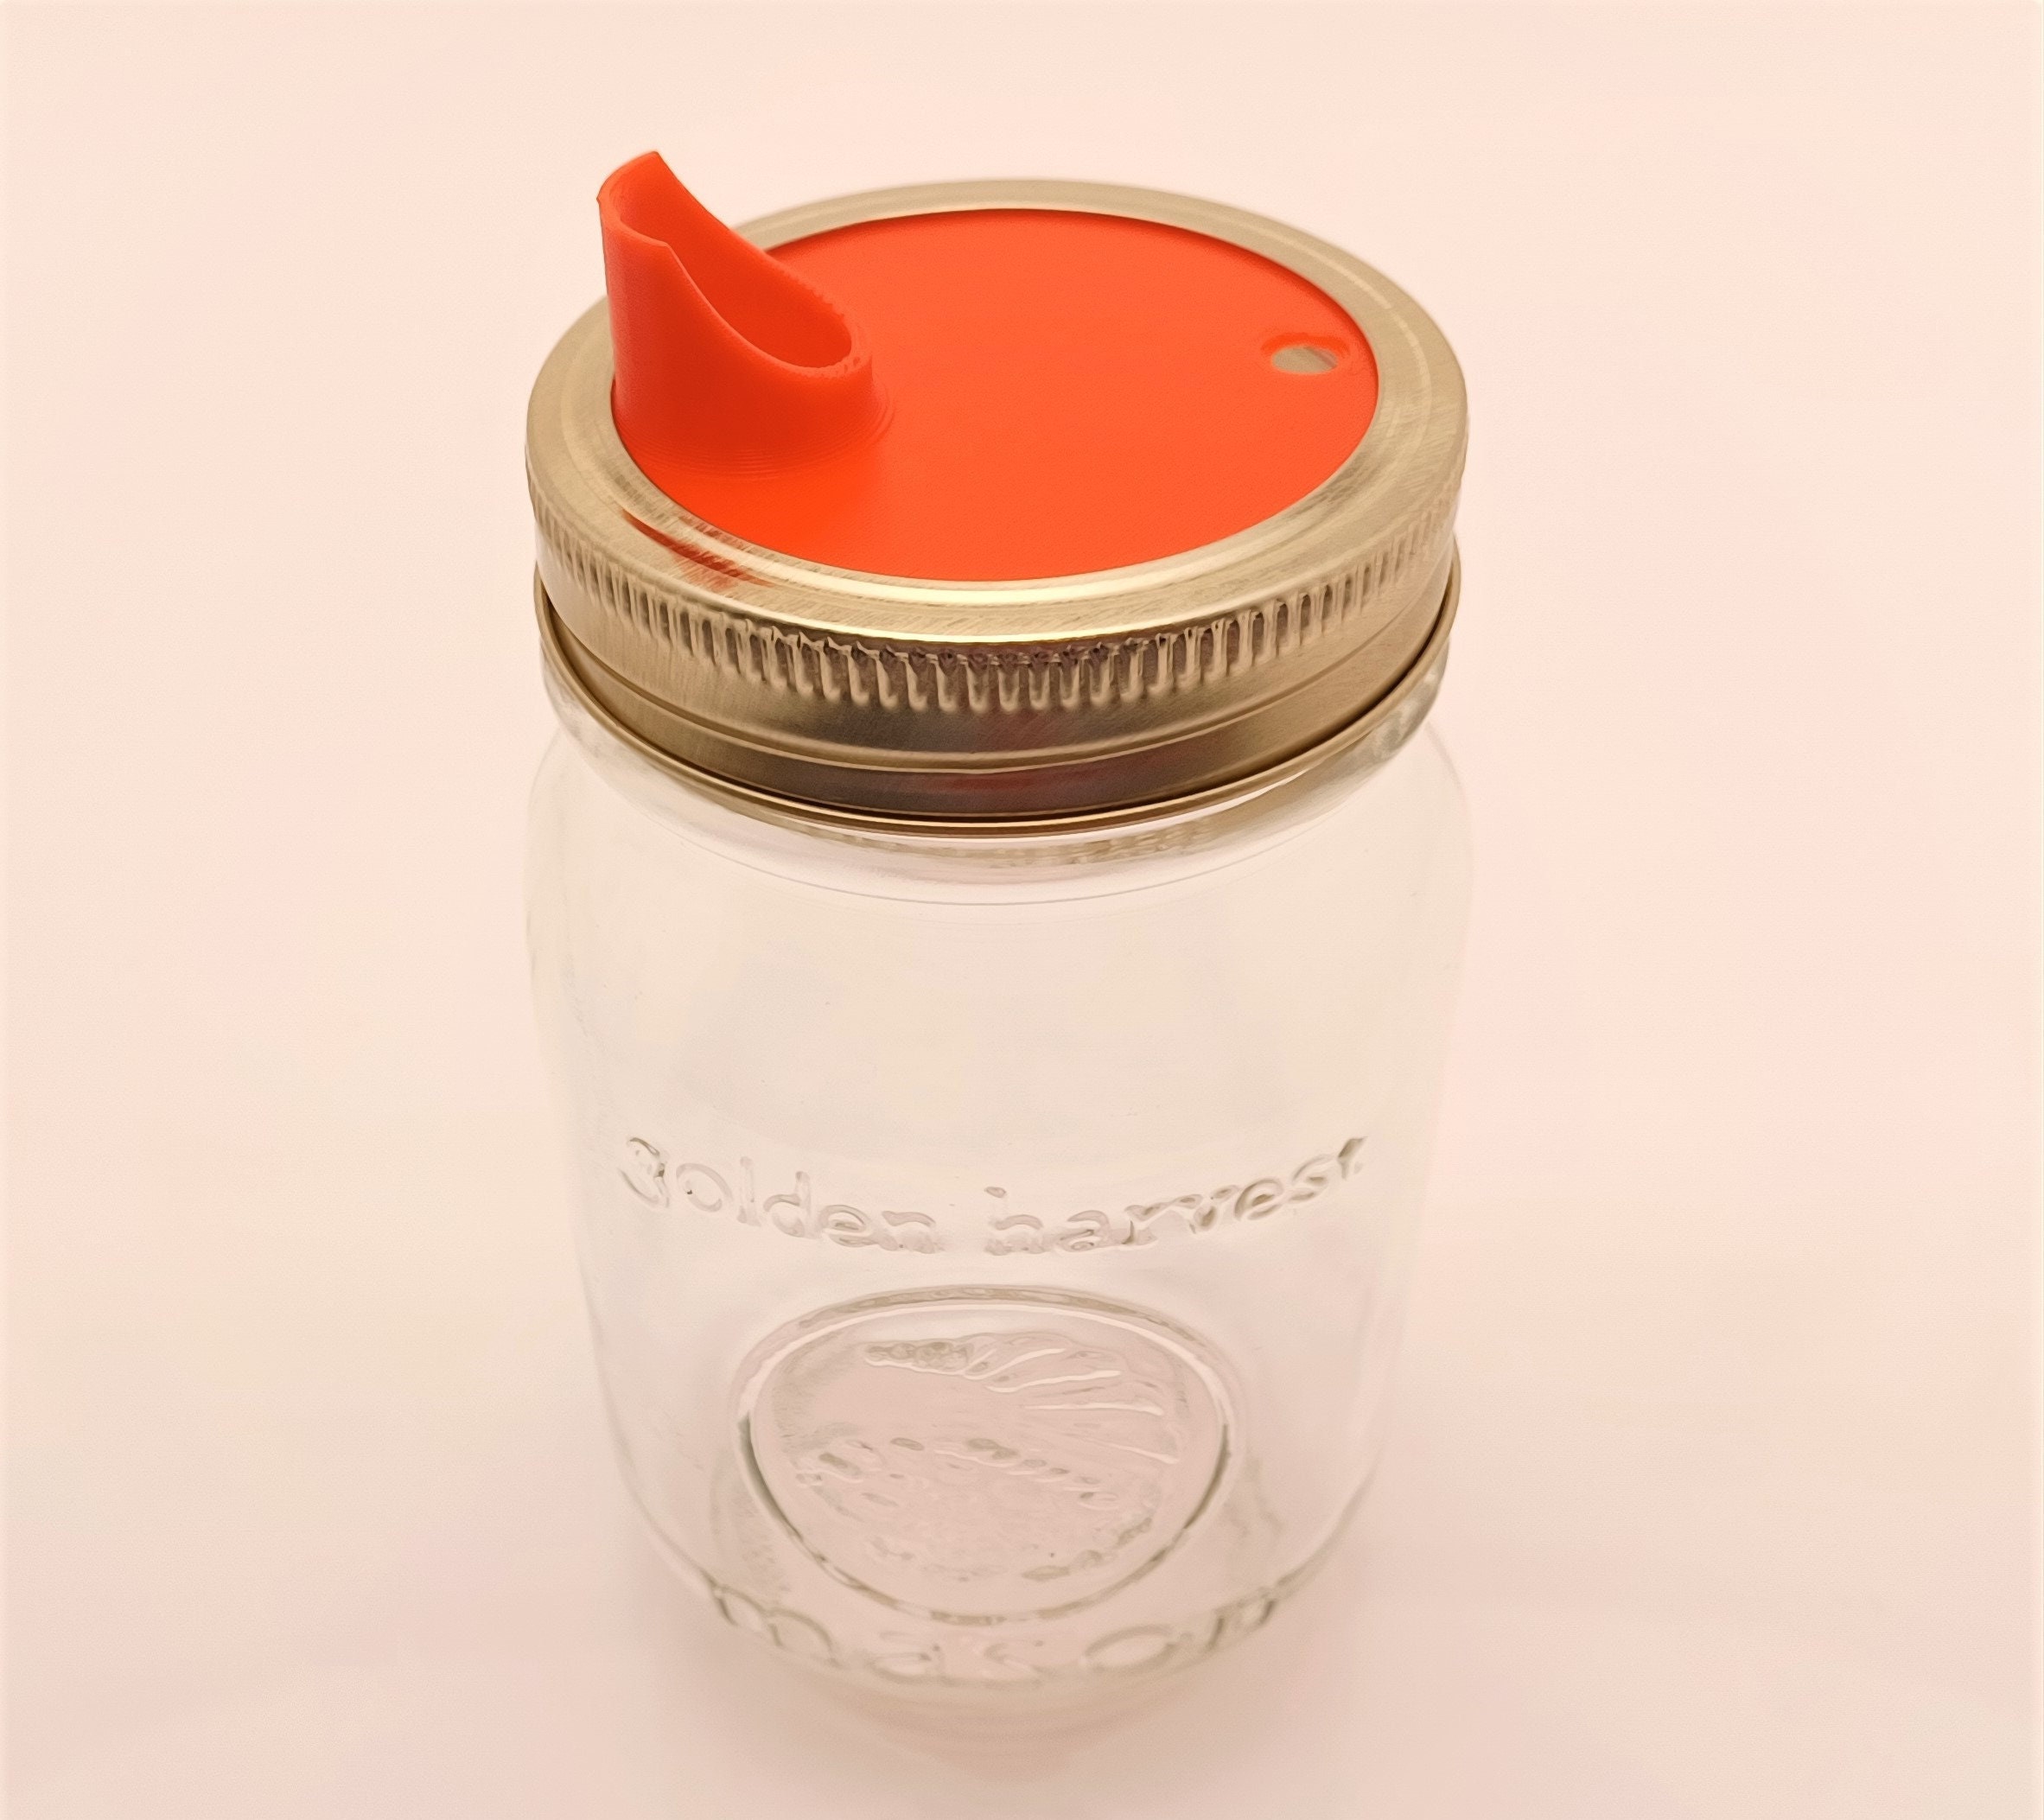 Blender Pitcher Pour Spout Cover Transparent Flap Lid Jar Top